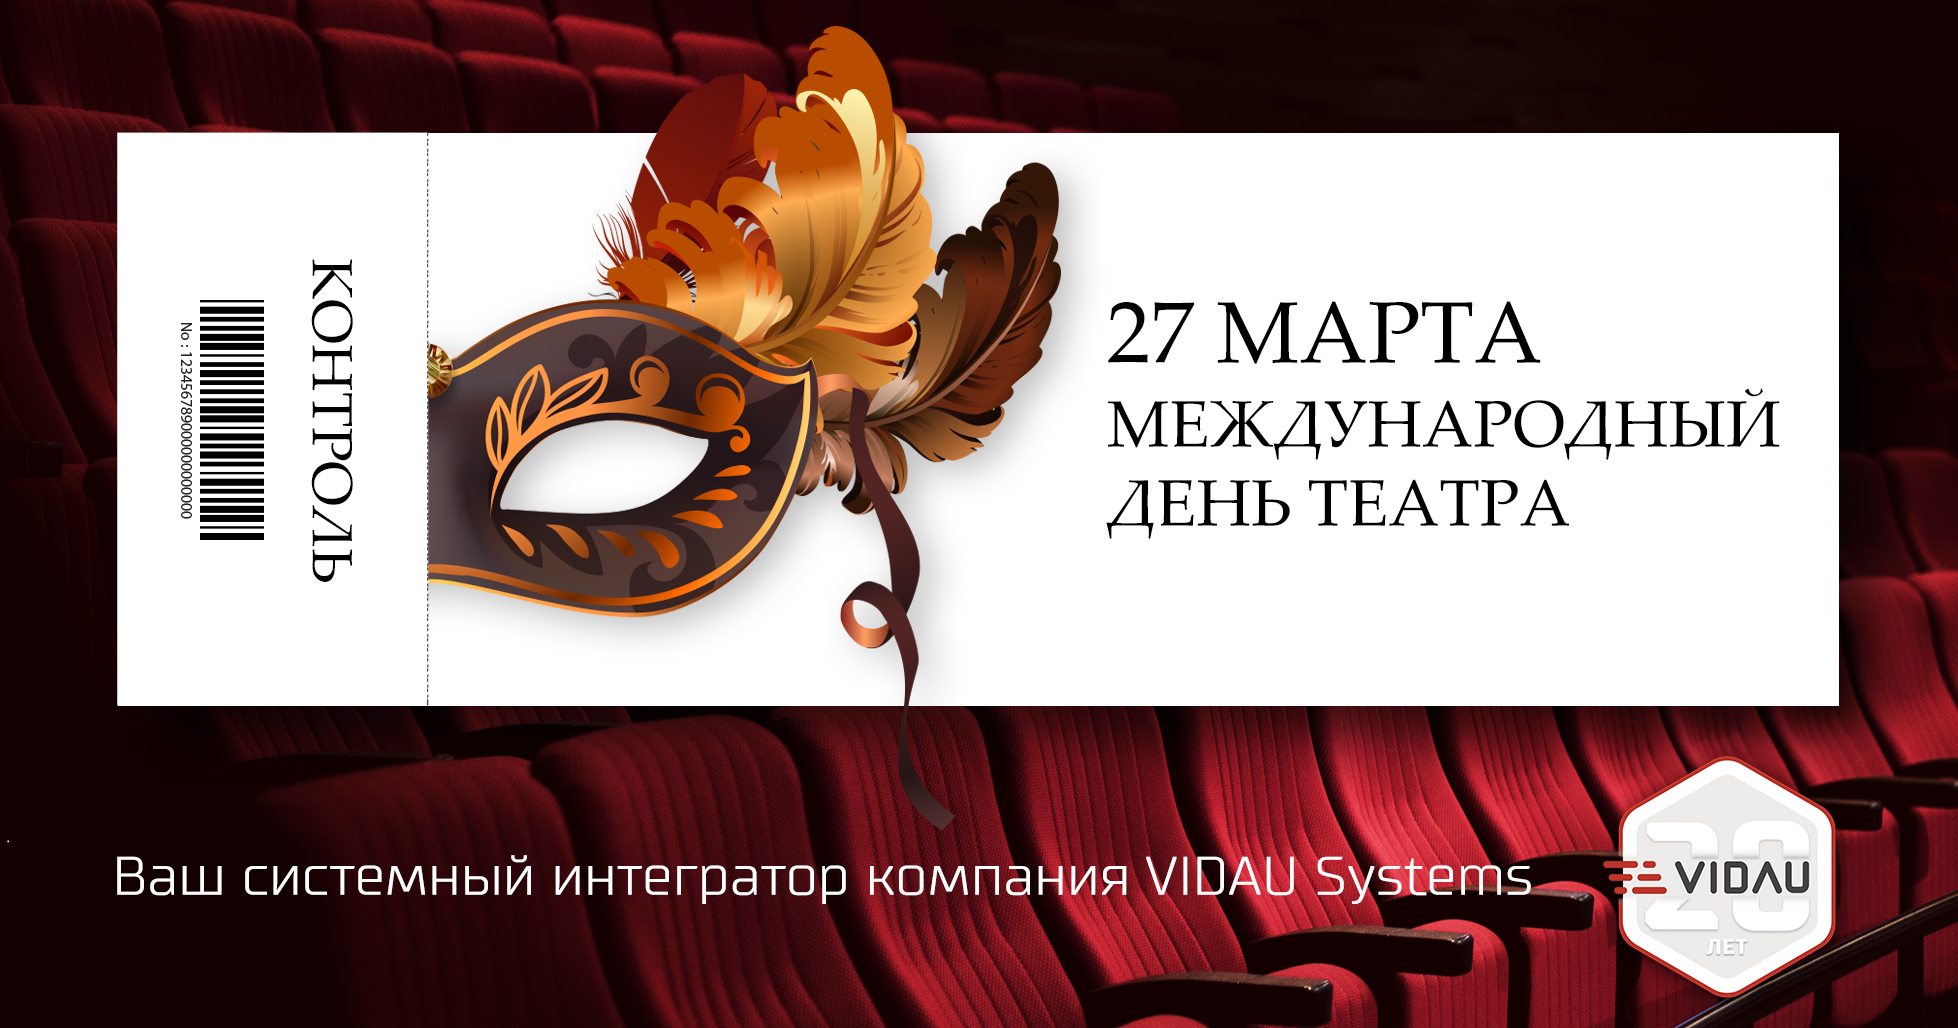 Сегодня Международный день театра!